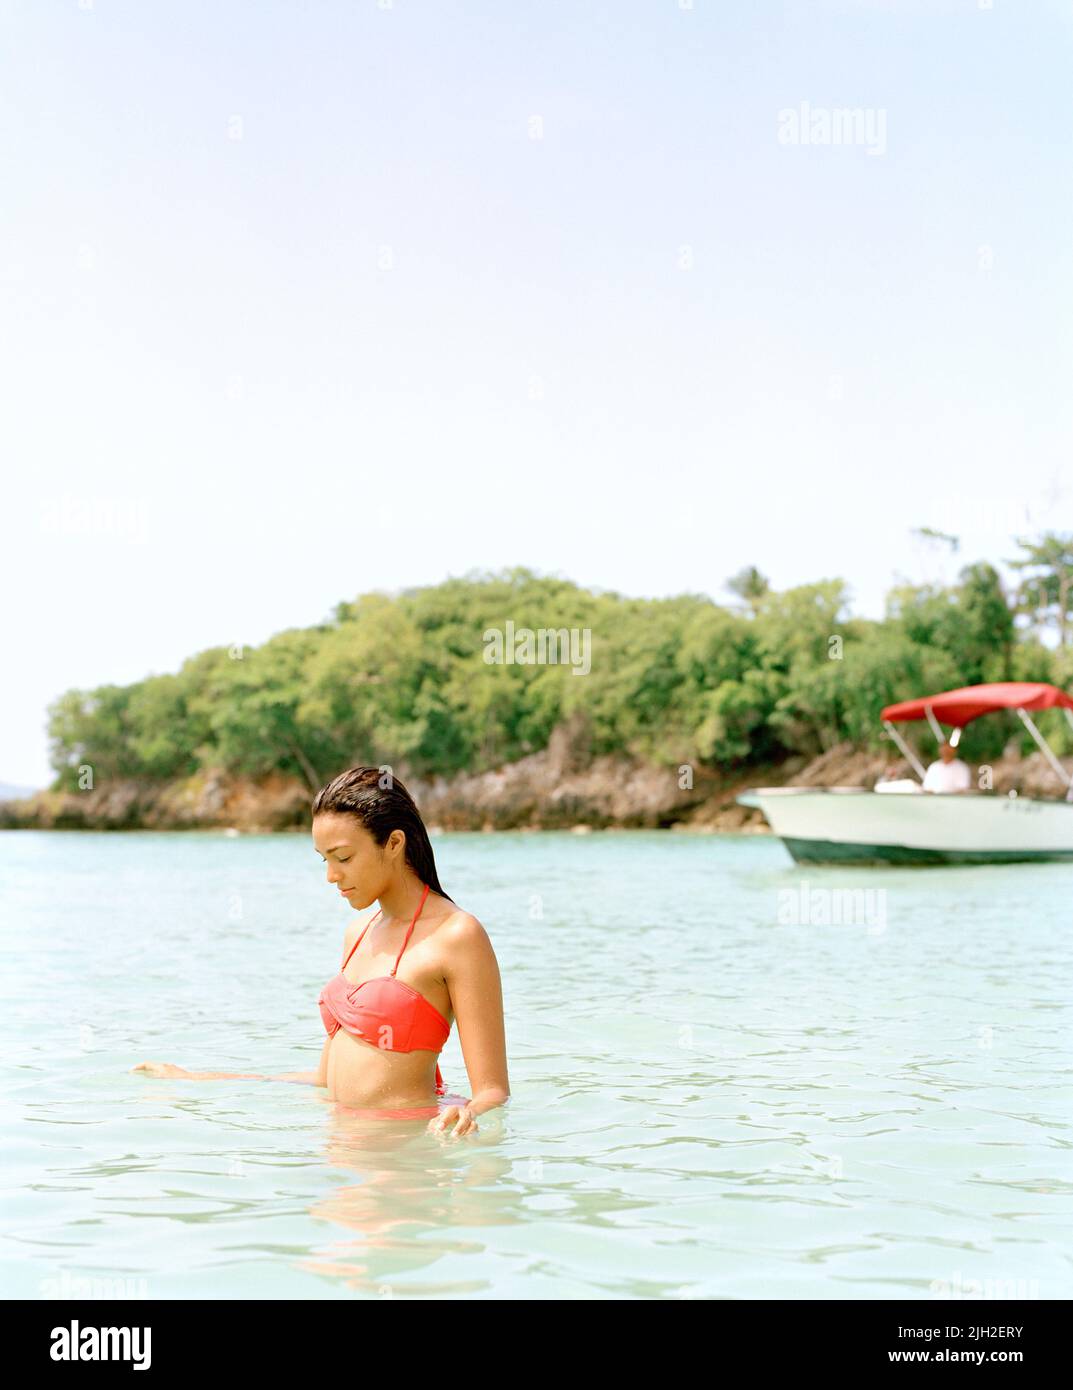 Woman wading in bay, Playa Rincon, Las Galeras, Dominican Republic Stock Photo